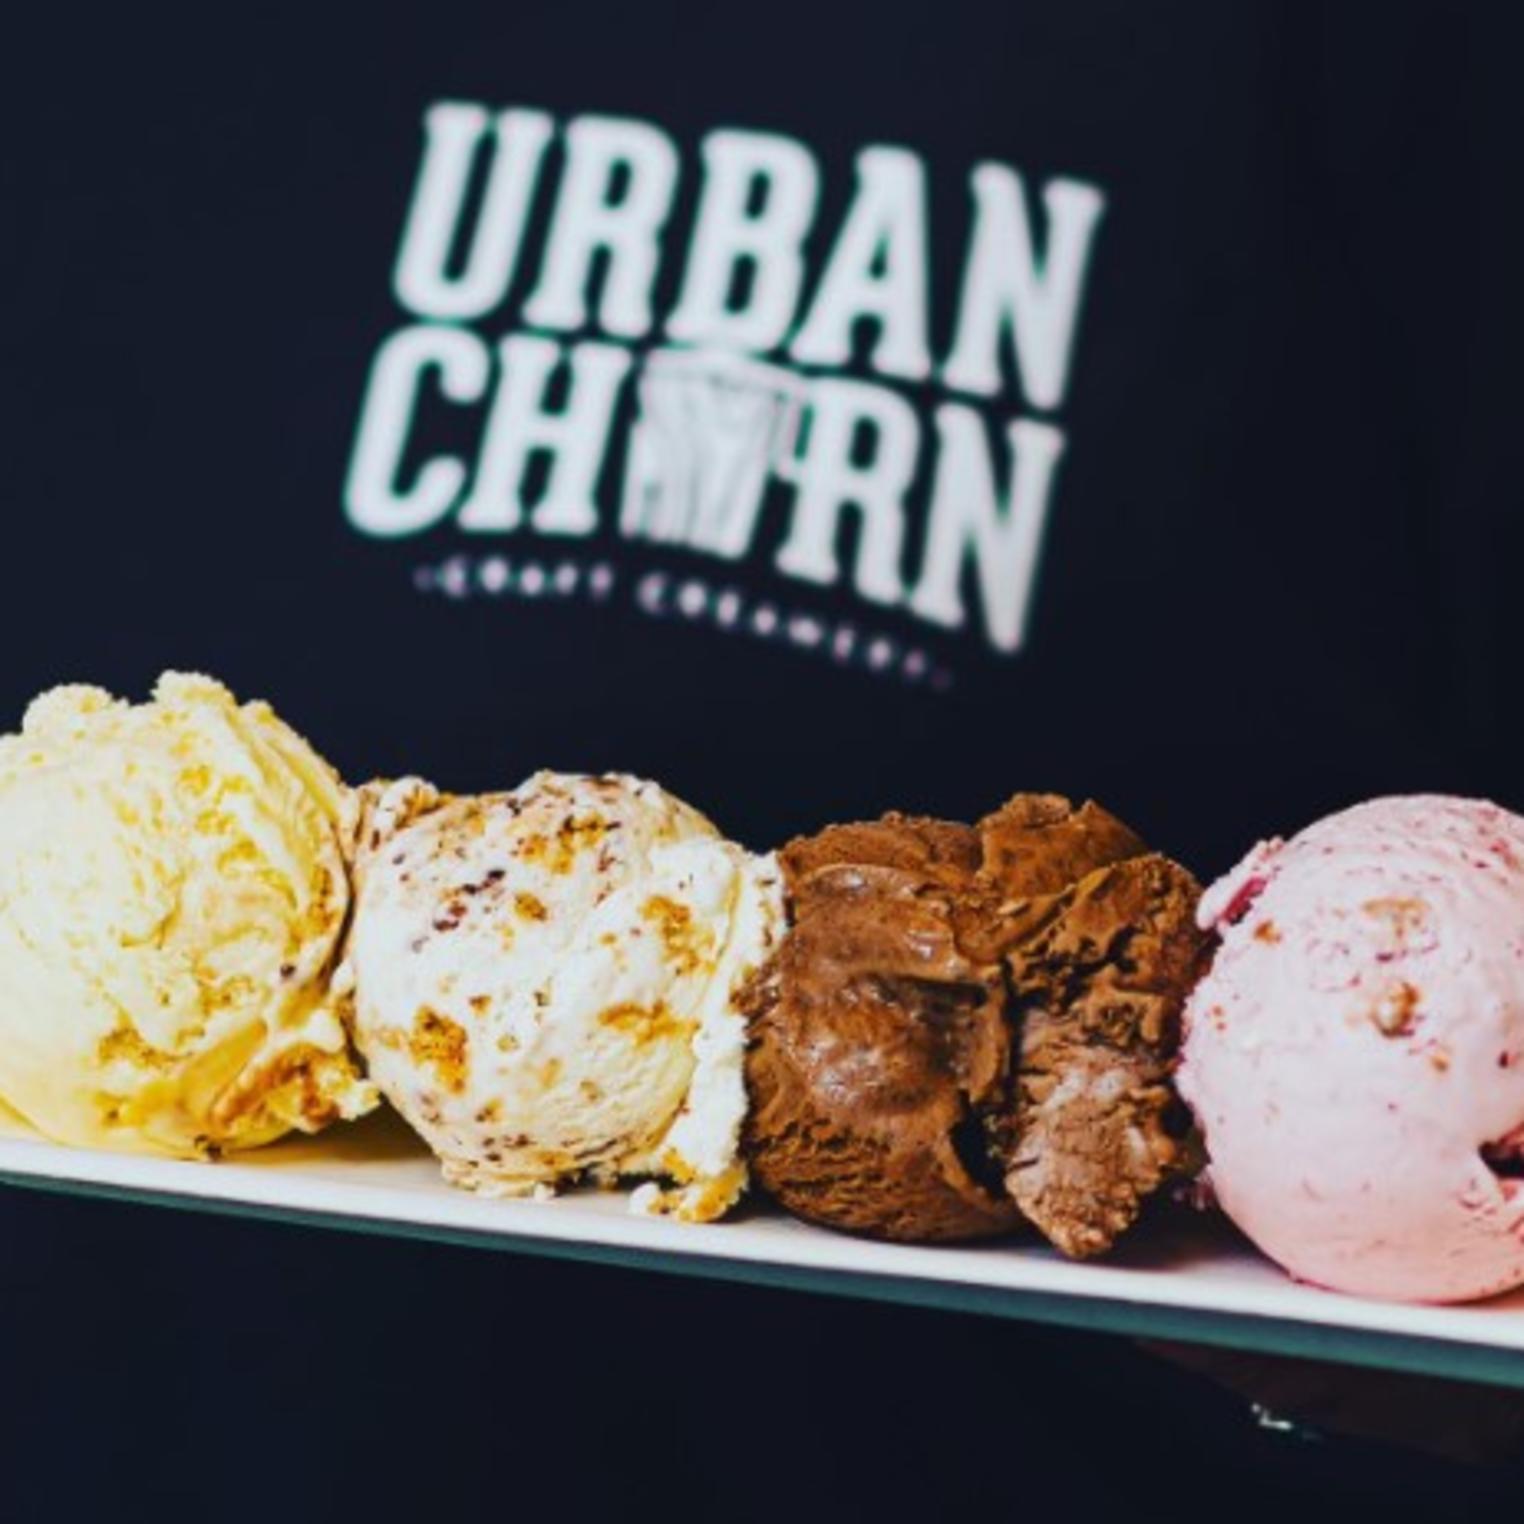 Urban Churn Craft Creamery